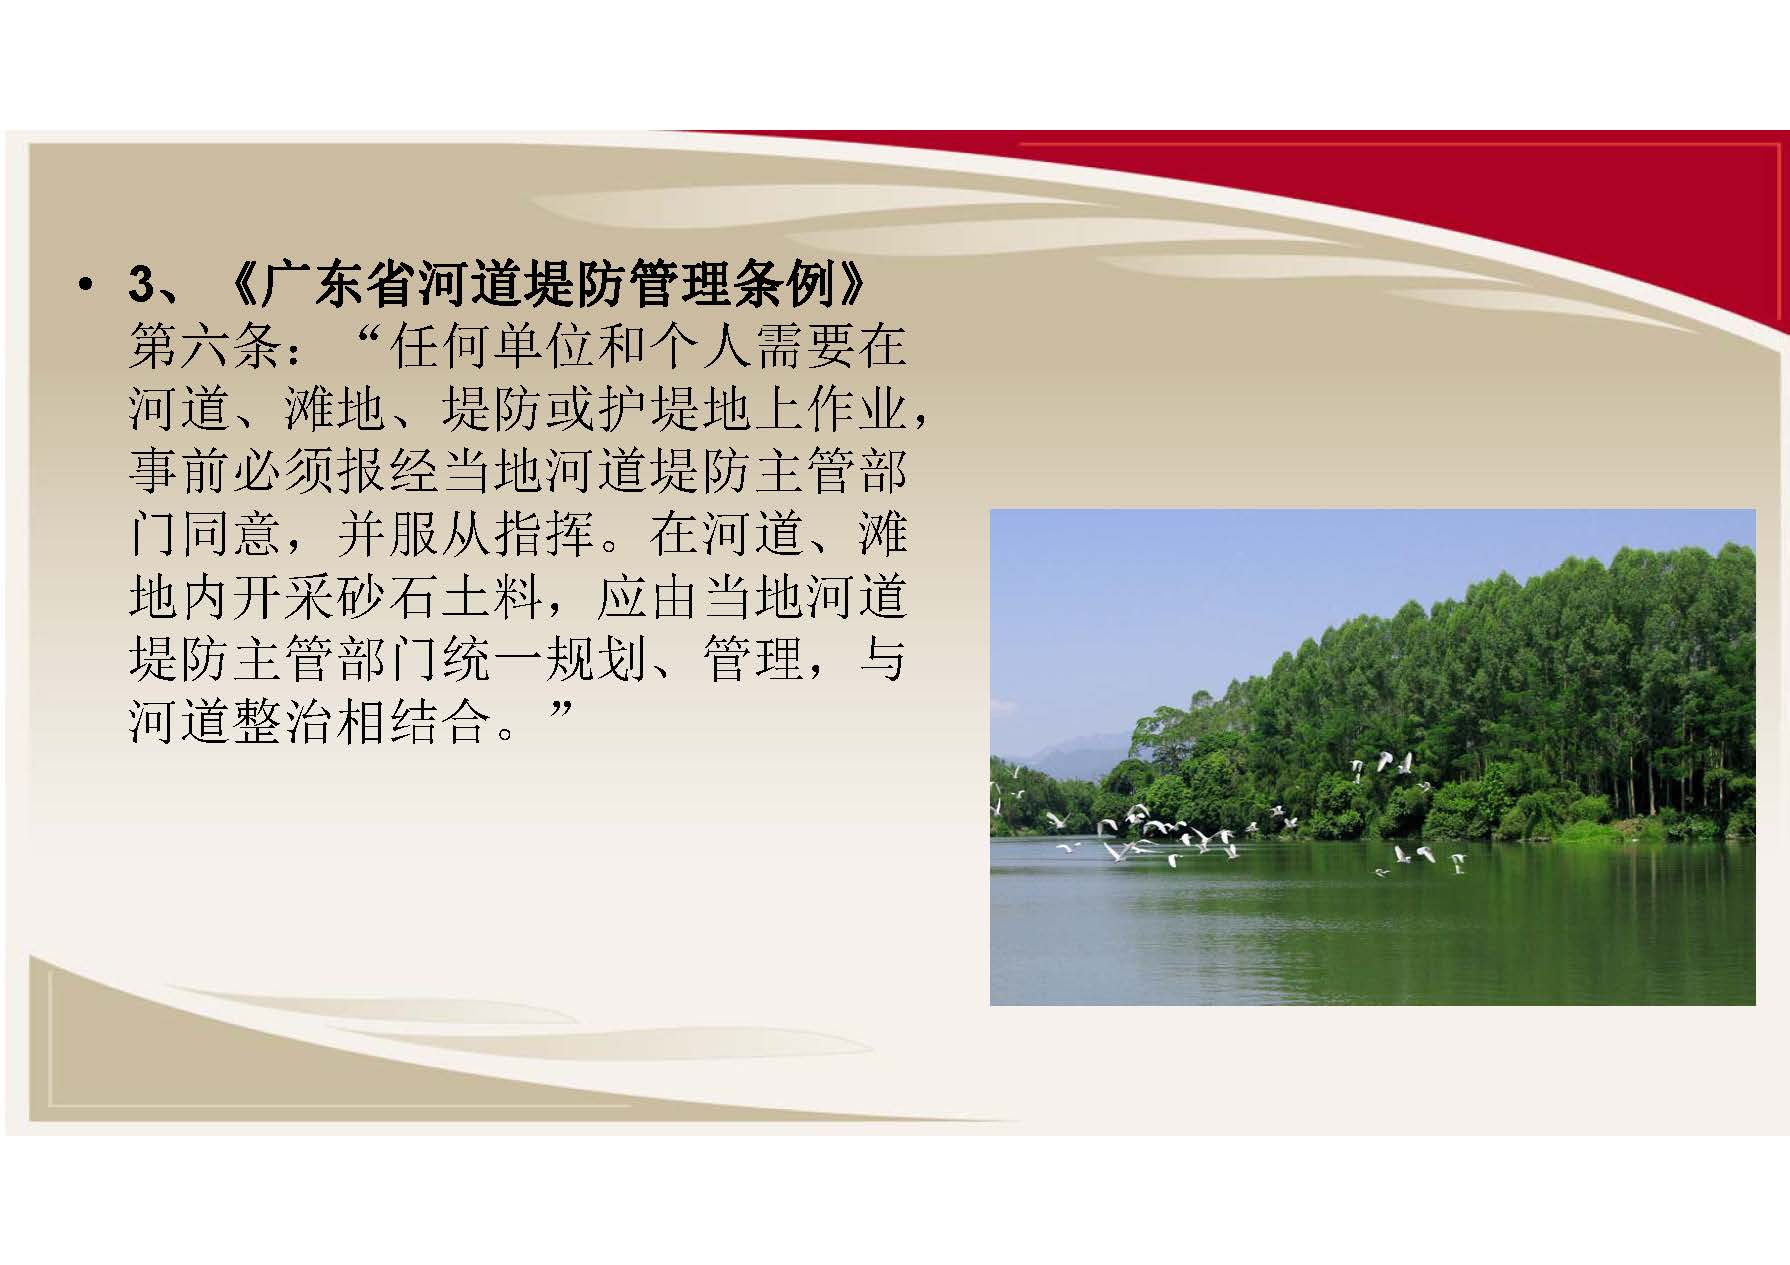 广州市增城区水务局关于印发《关于划定增城区河砂禁采区的公告》的通知（图文解读）_页面_5.jpg